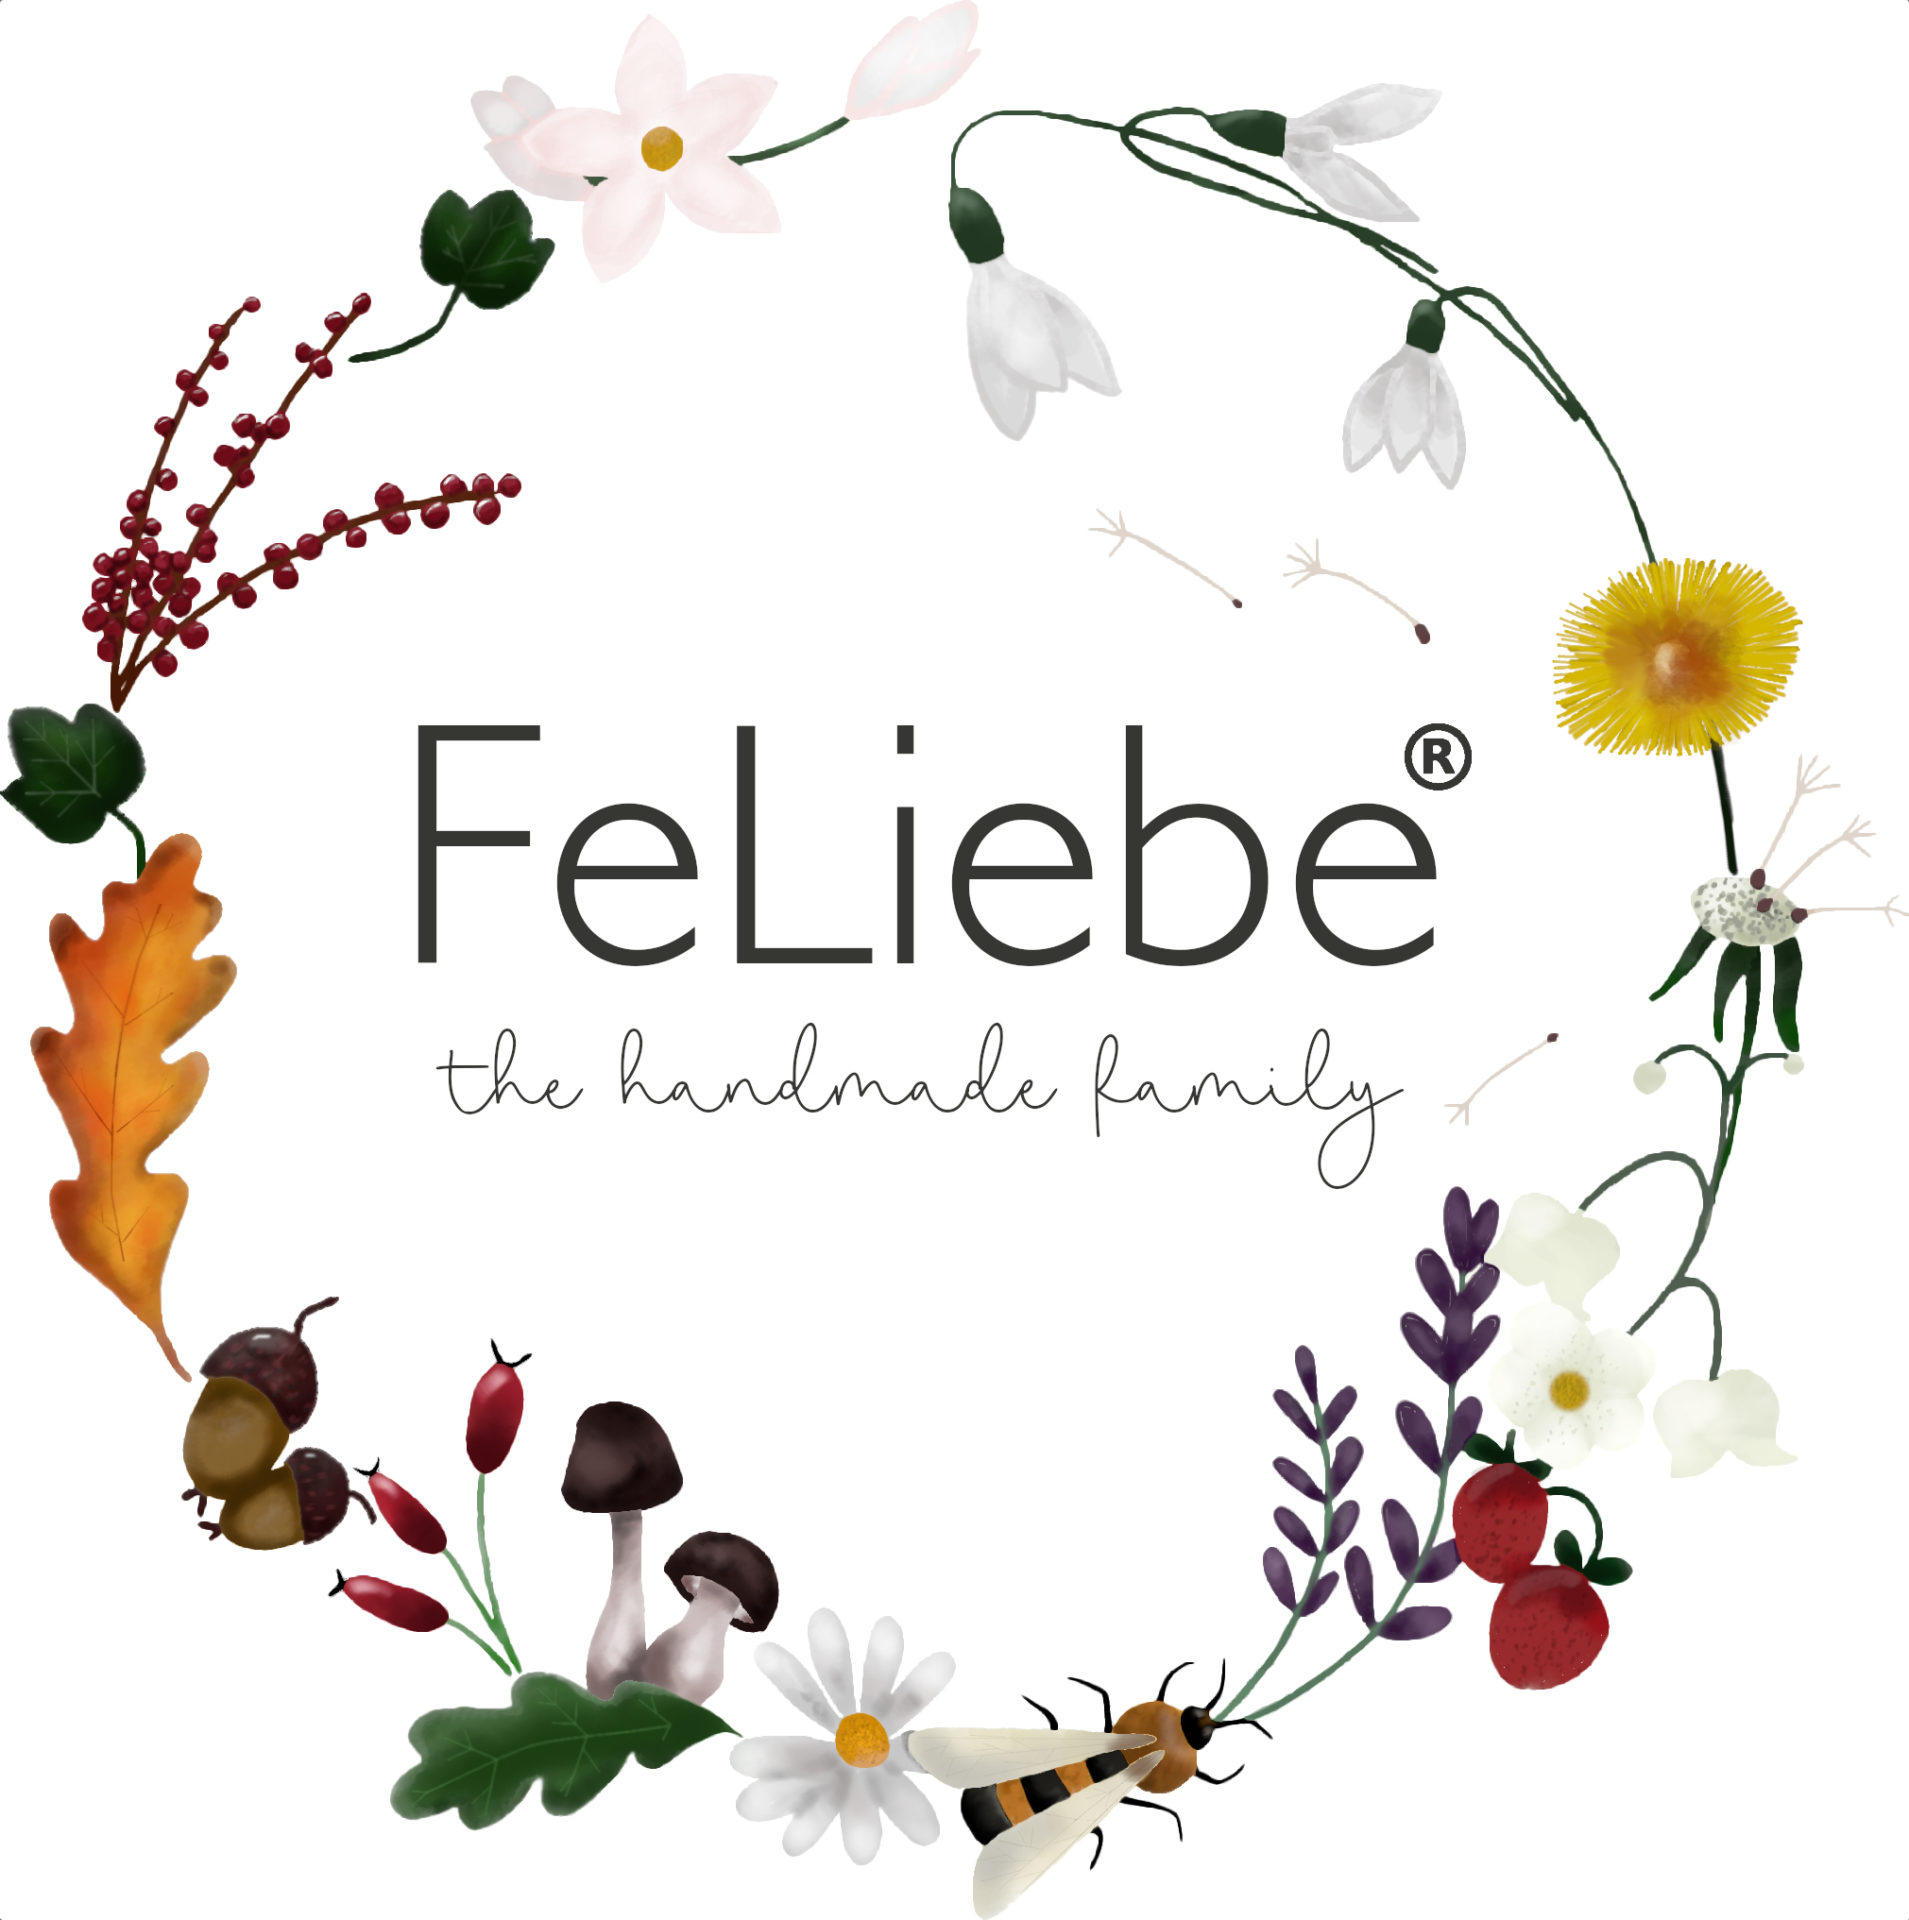 (c) Feliebe.de